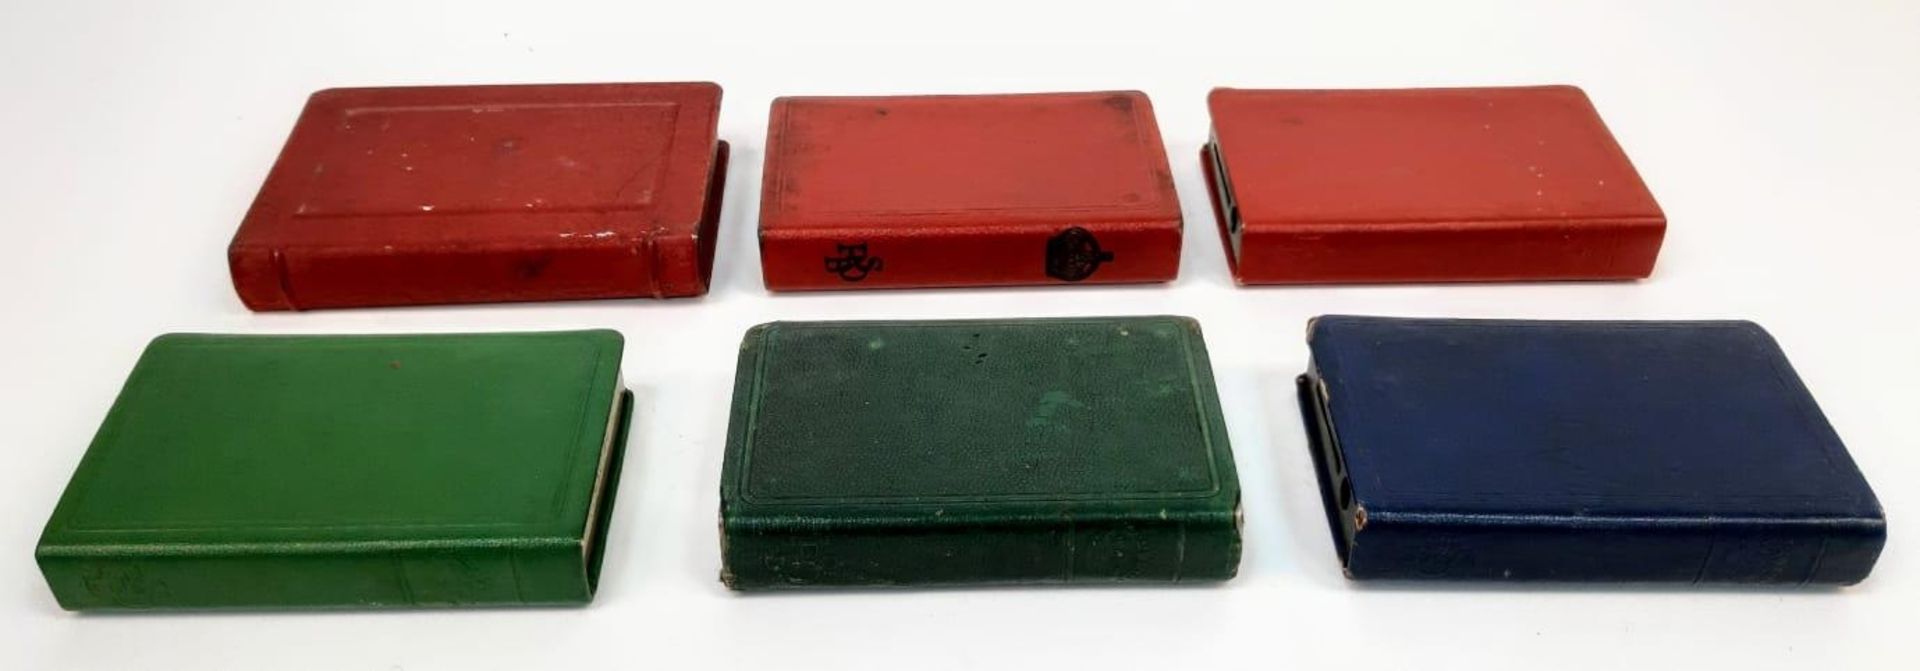 Six Vintage Post Office Metal Piggy Bank Boxes. No keys. 12 x 9cm largest box. - Bild 3 aus 5